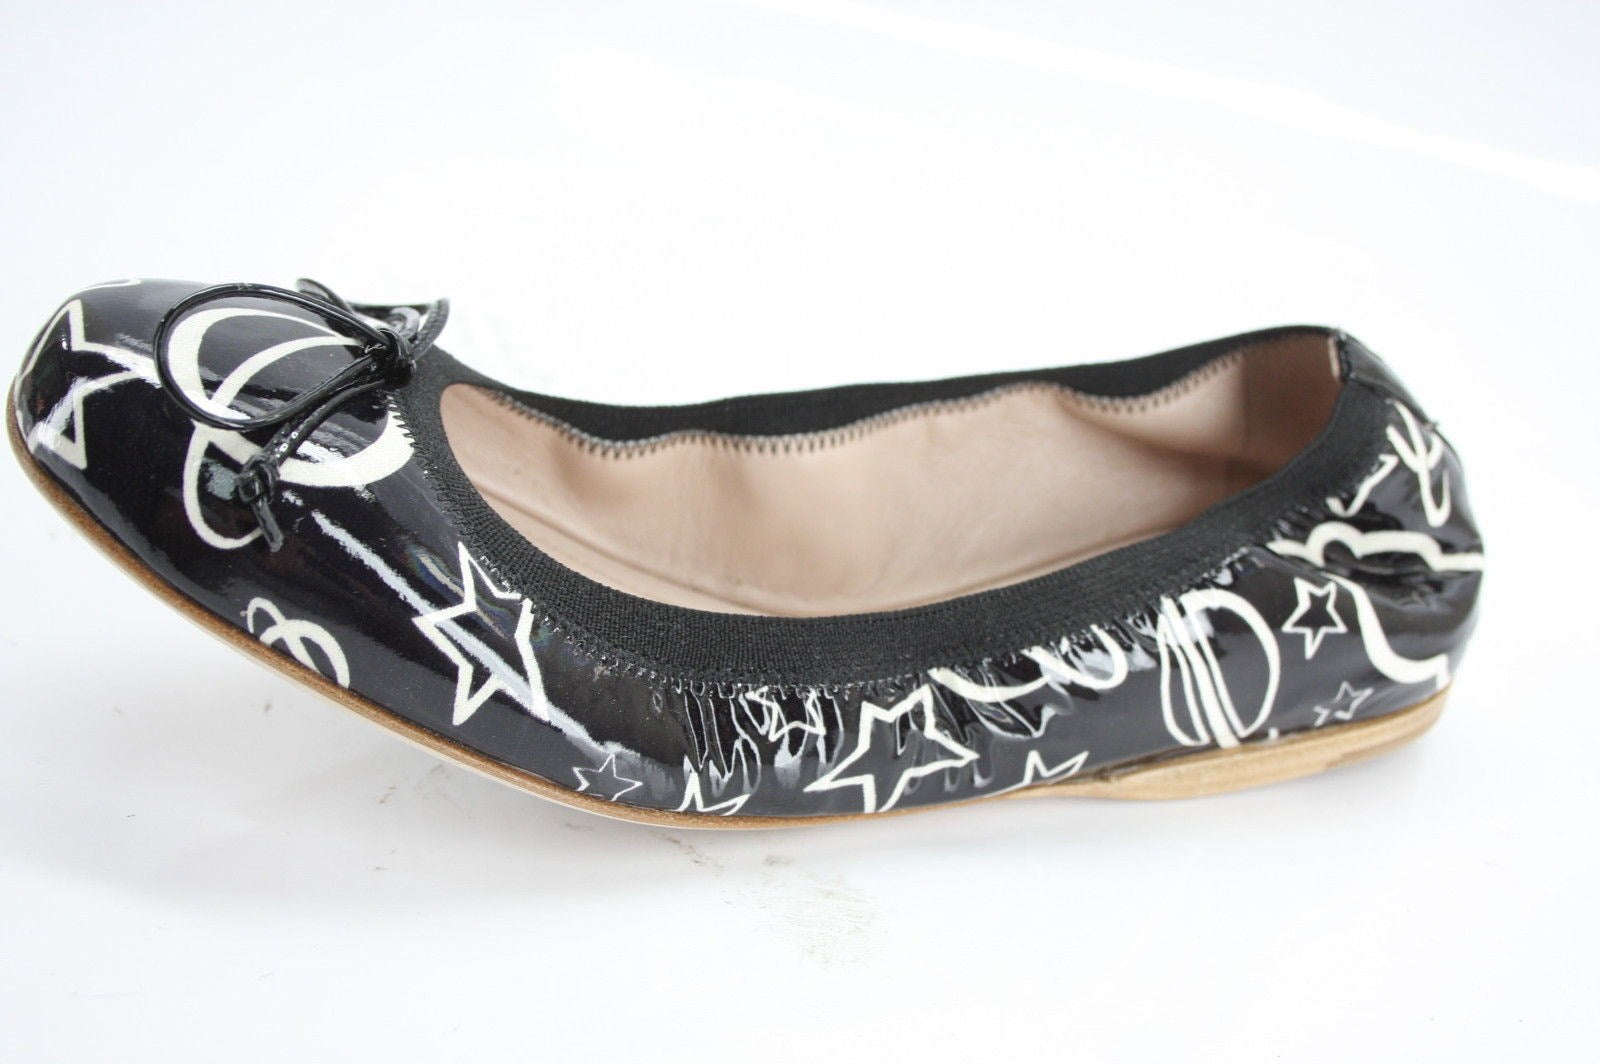 Miu Miu Black Patent Stellar Star Scrunch Bow Ballet Flats size 36 New $490